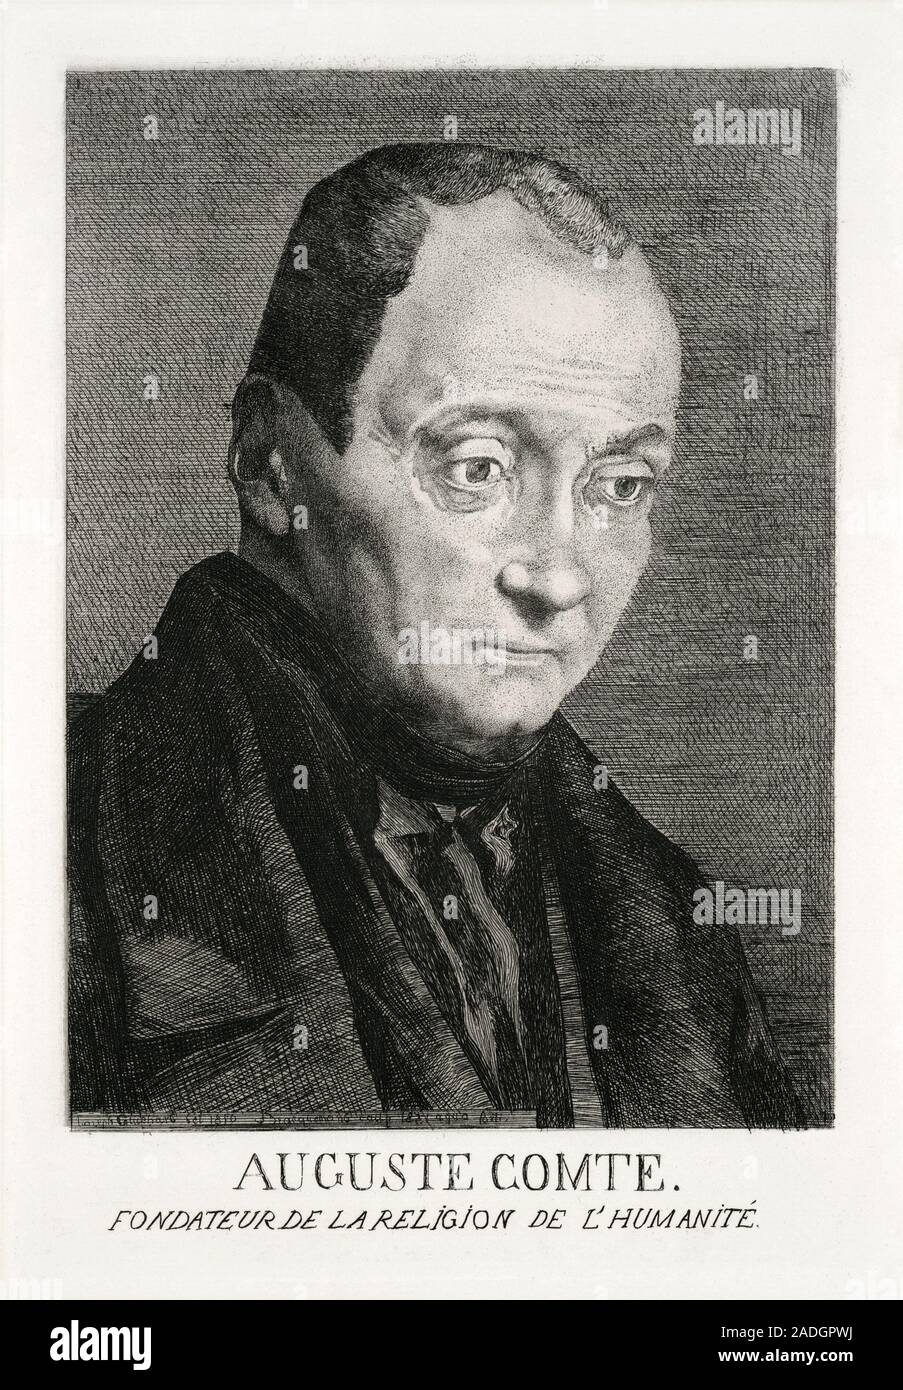 Auguste Comte (1798-1857), filósofo francés. Comte, quien es considerado el  padre de la sociología moderna, acuñó el término 